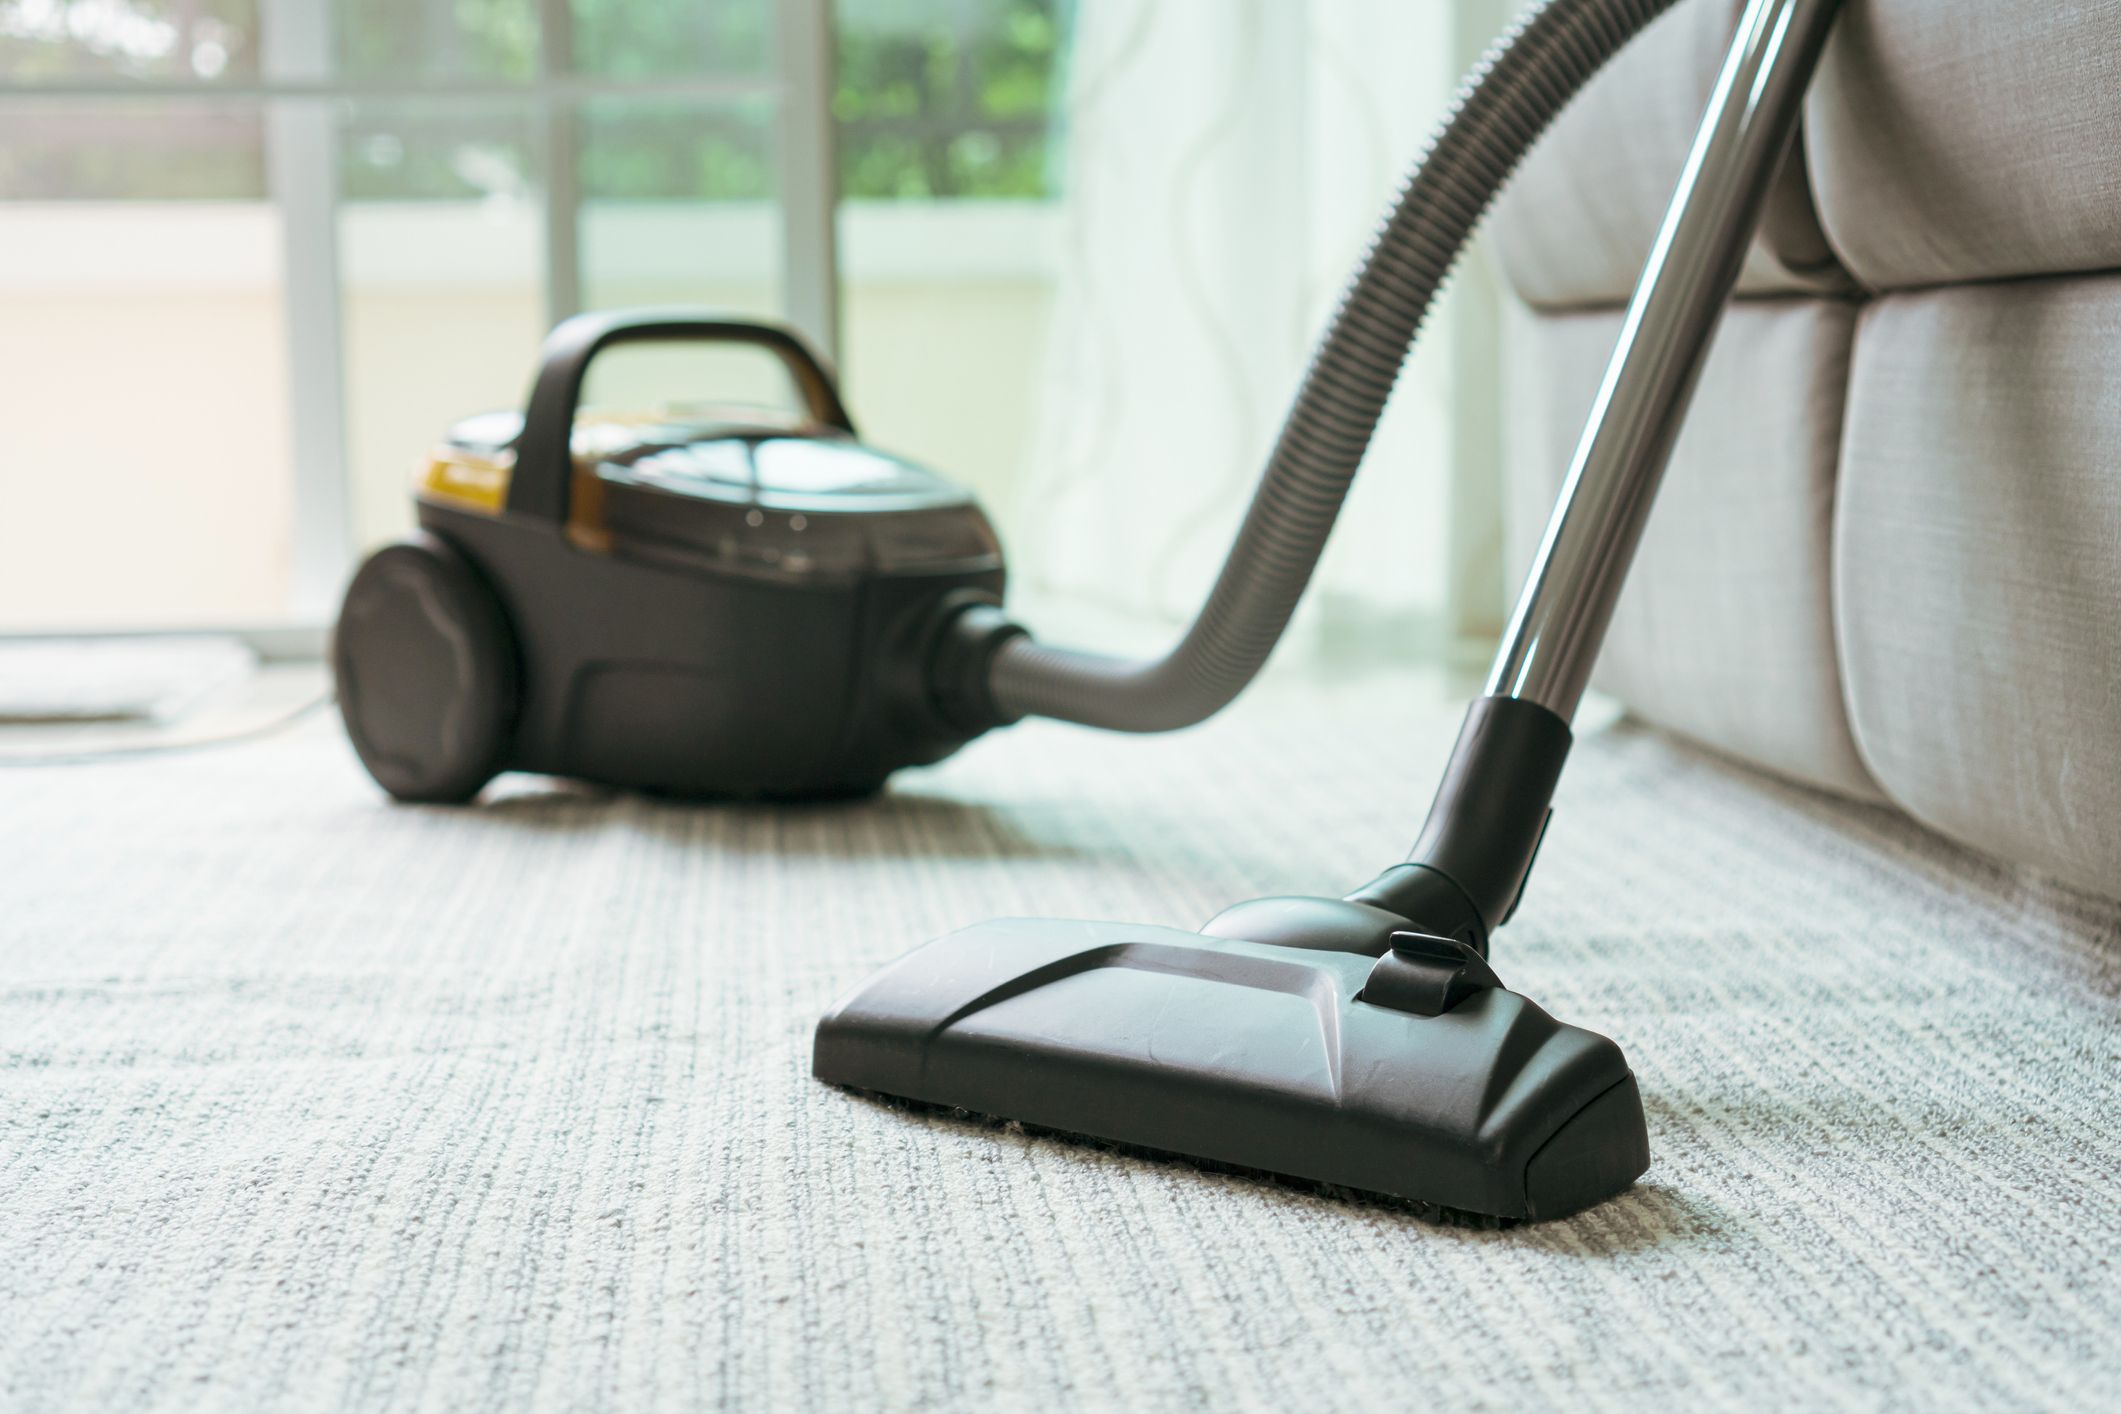 8 Best Hepa Vacuum Cleaners Reviews 2021, Best Vacuum Cleaner For Hardwood Floors And Carpet